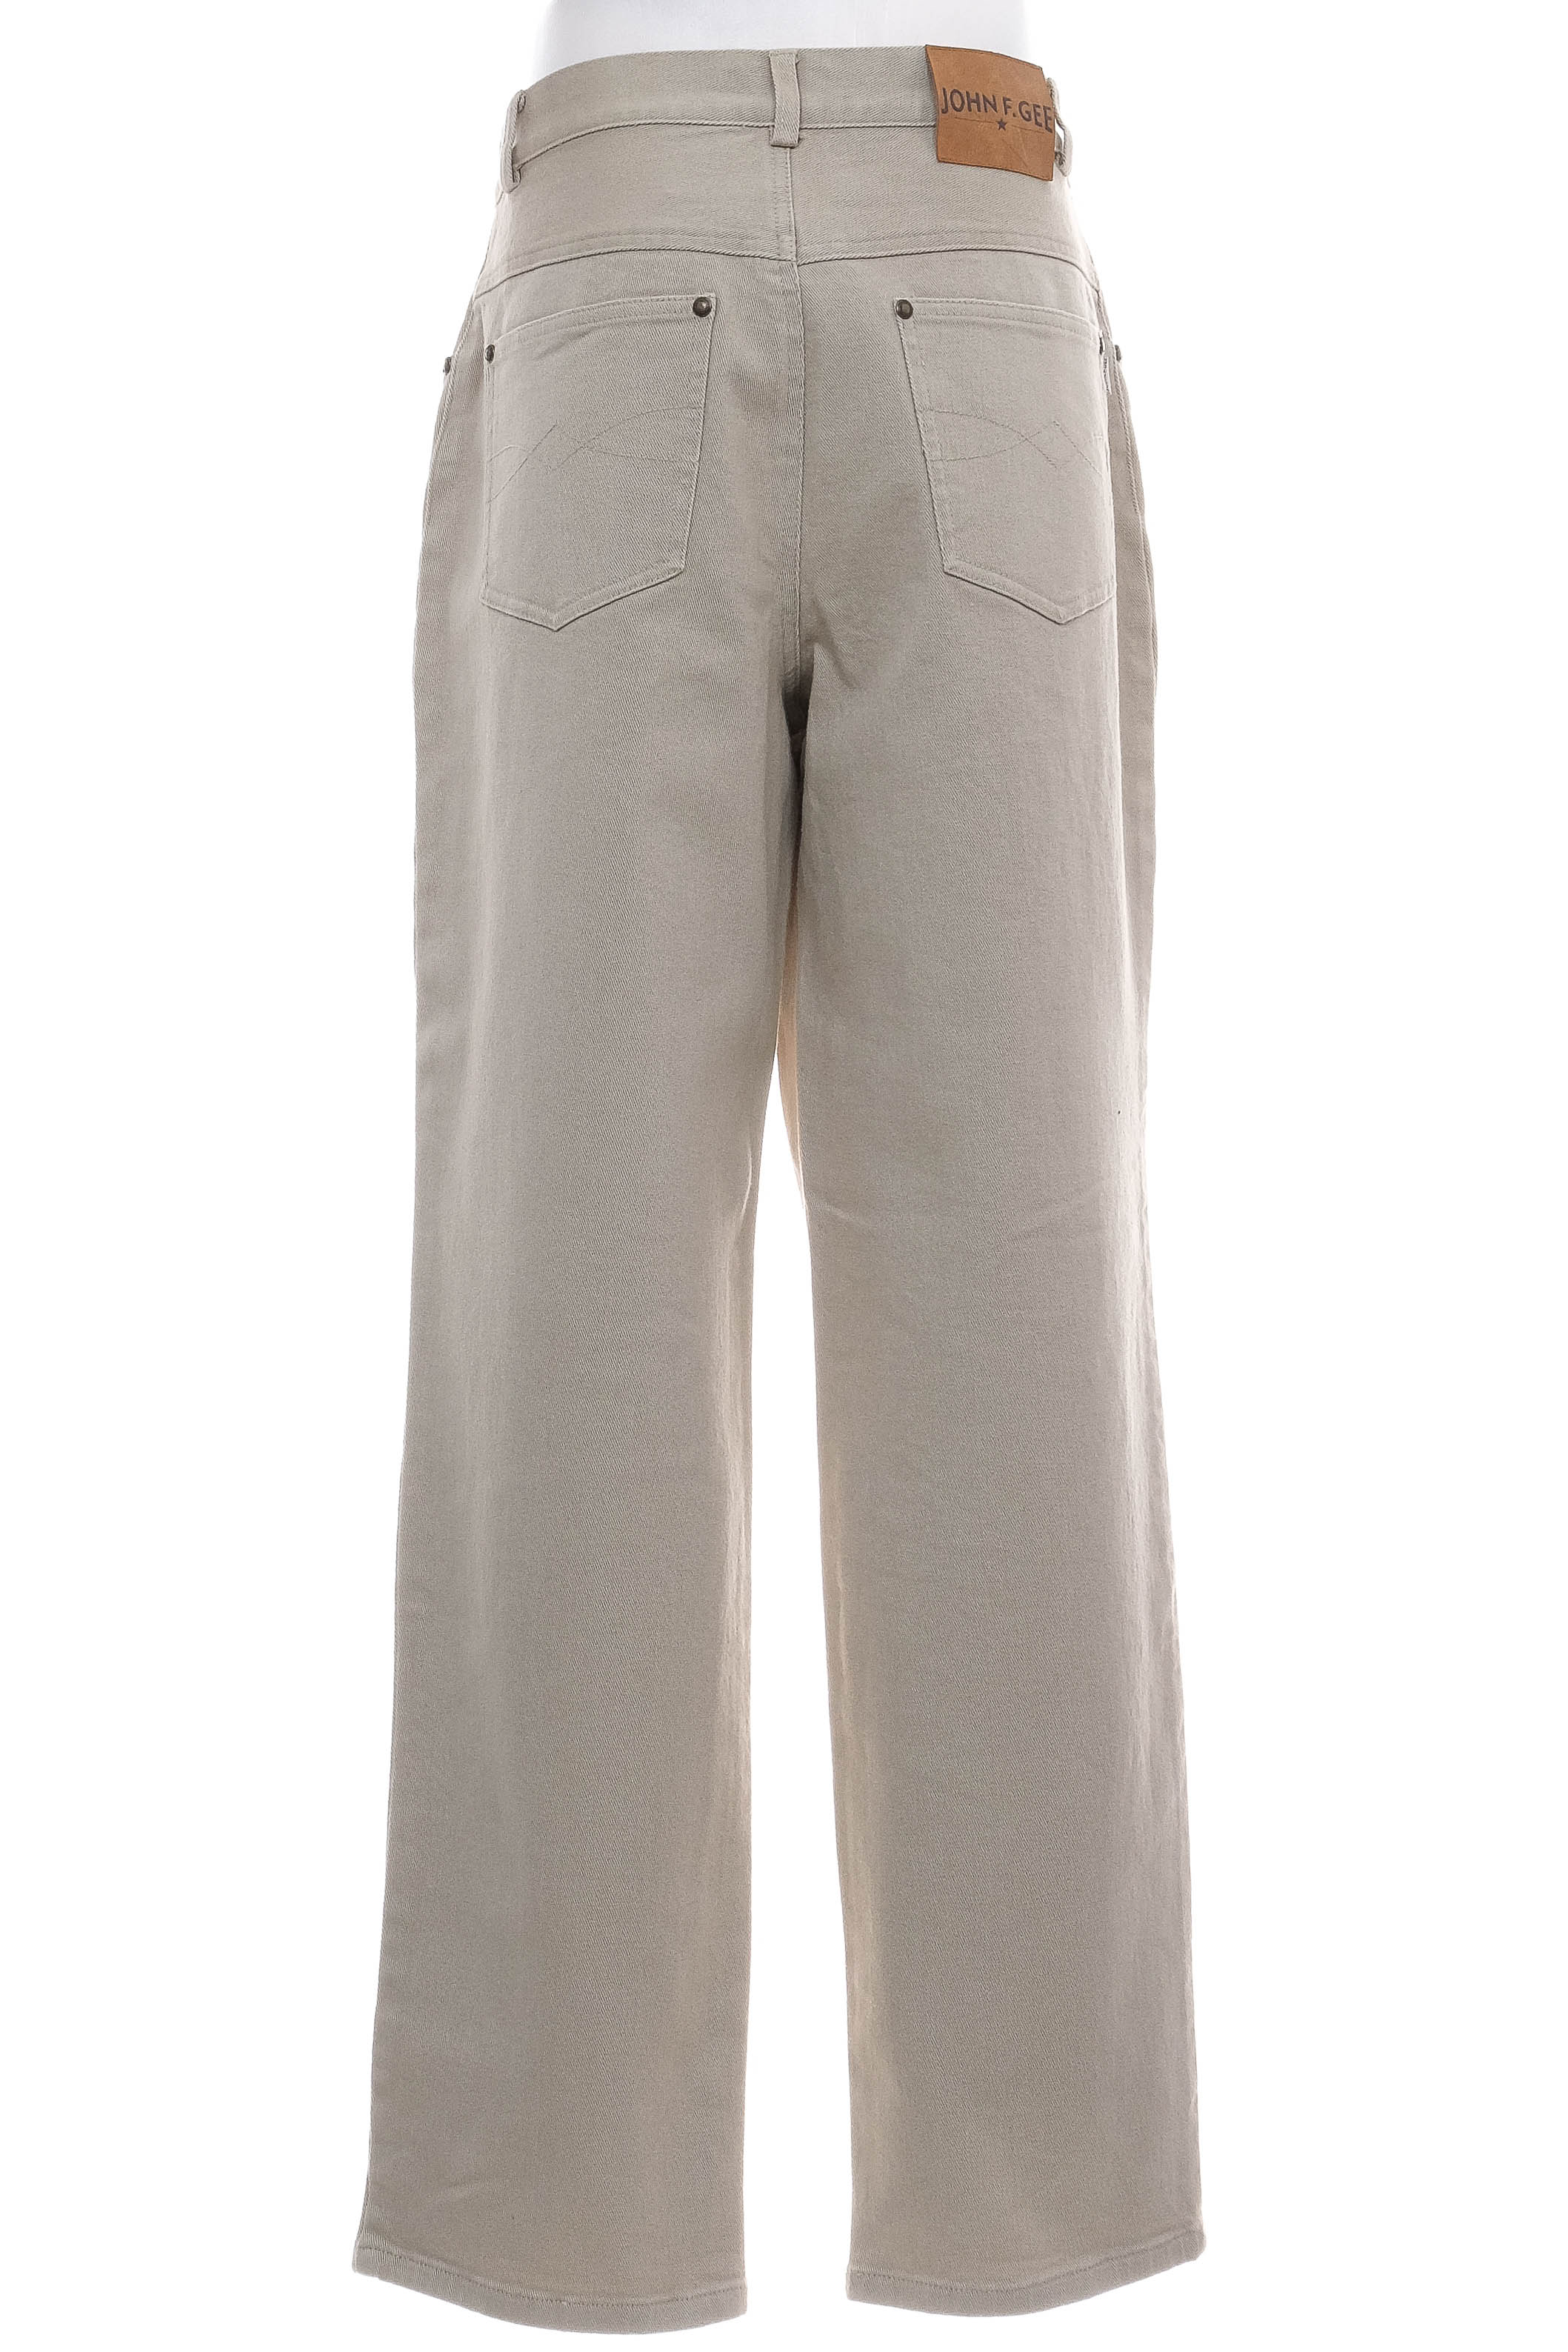 Pantalon pentru bărbați - JOHN F. GEE - 1